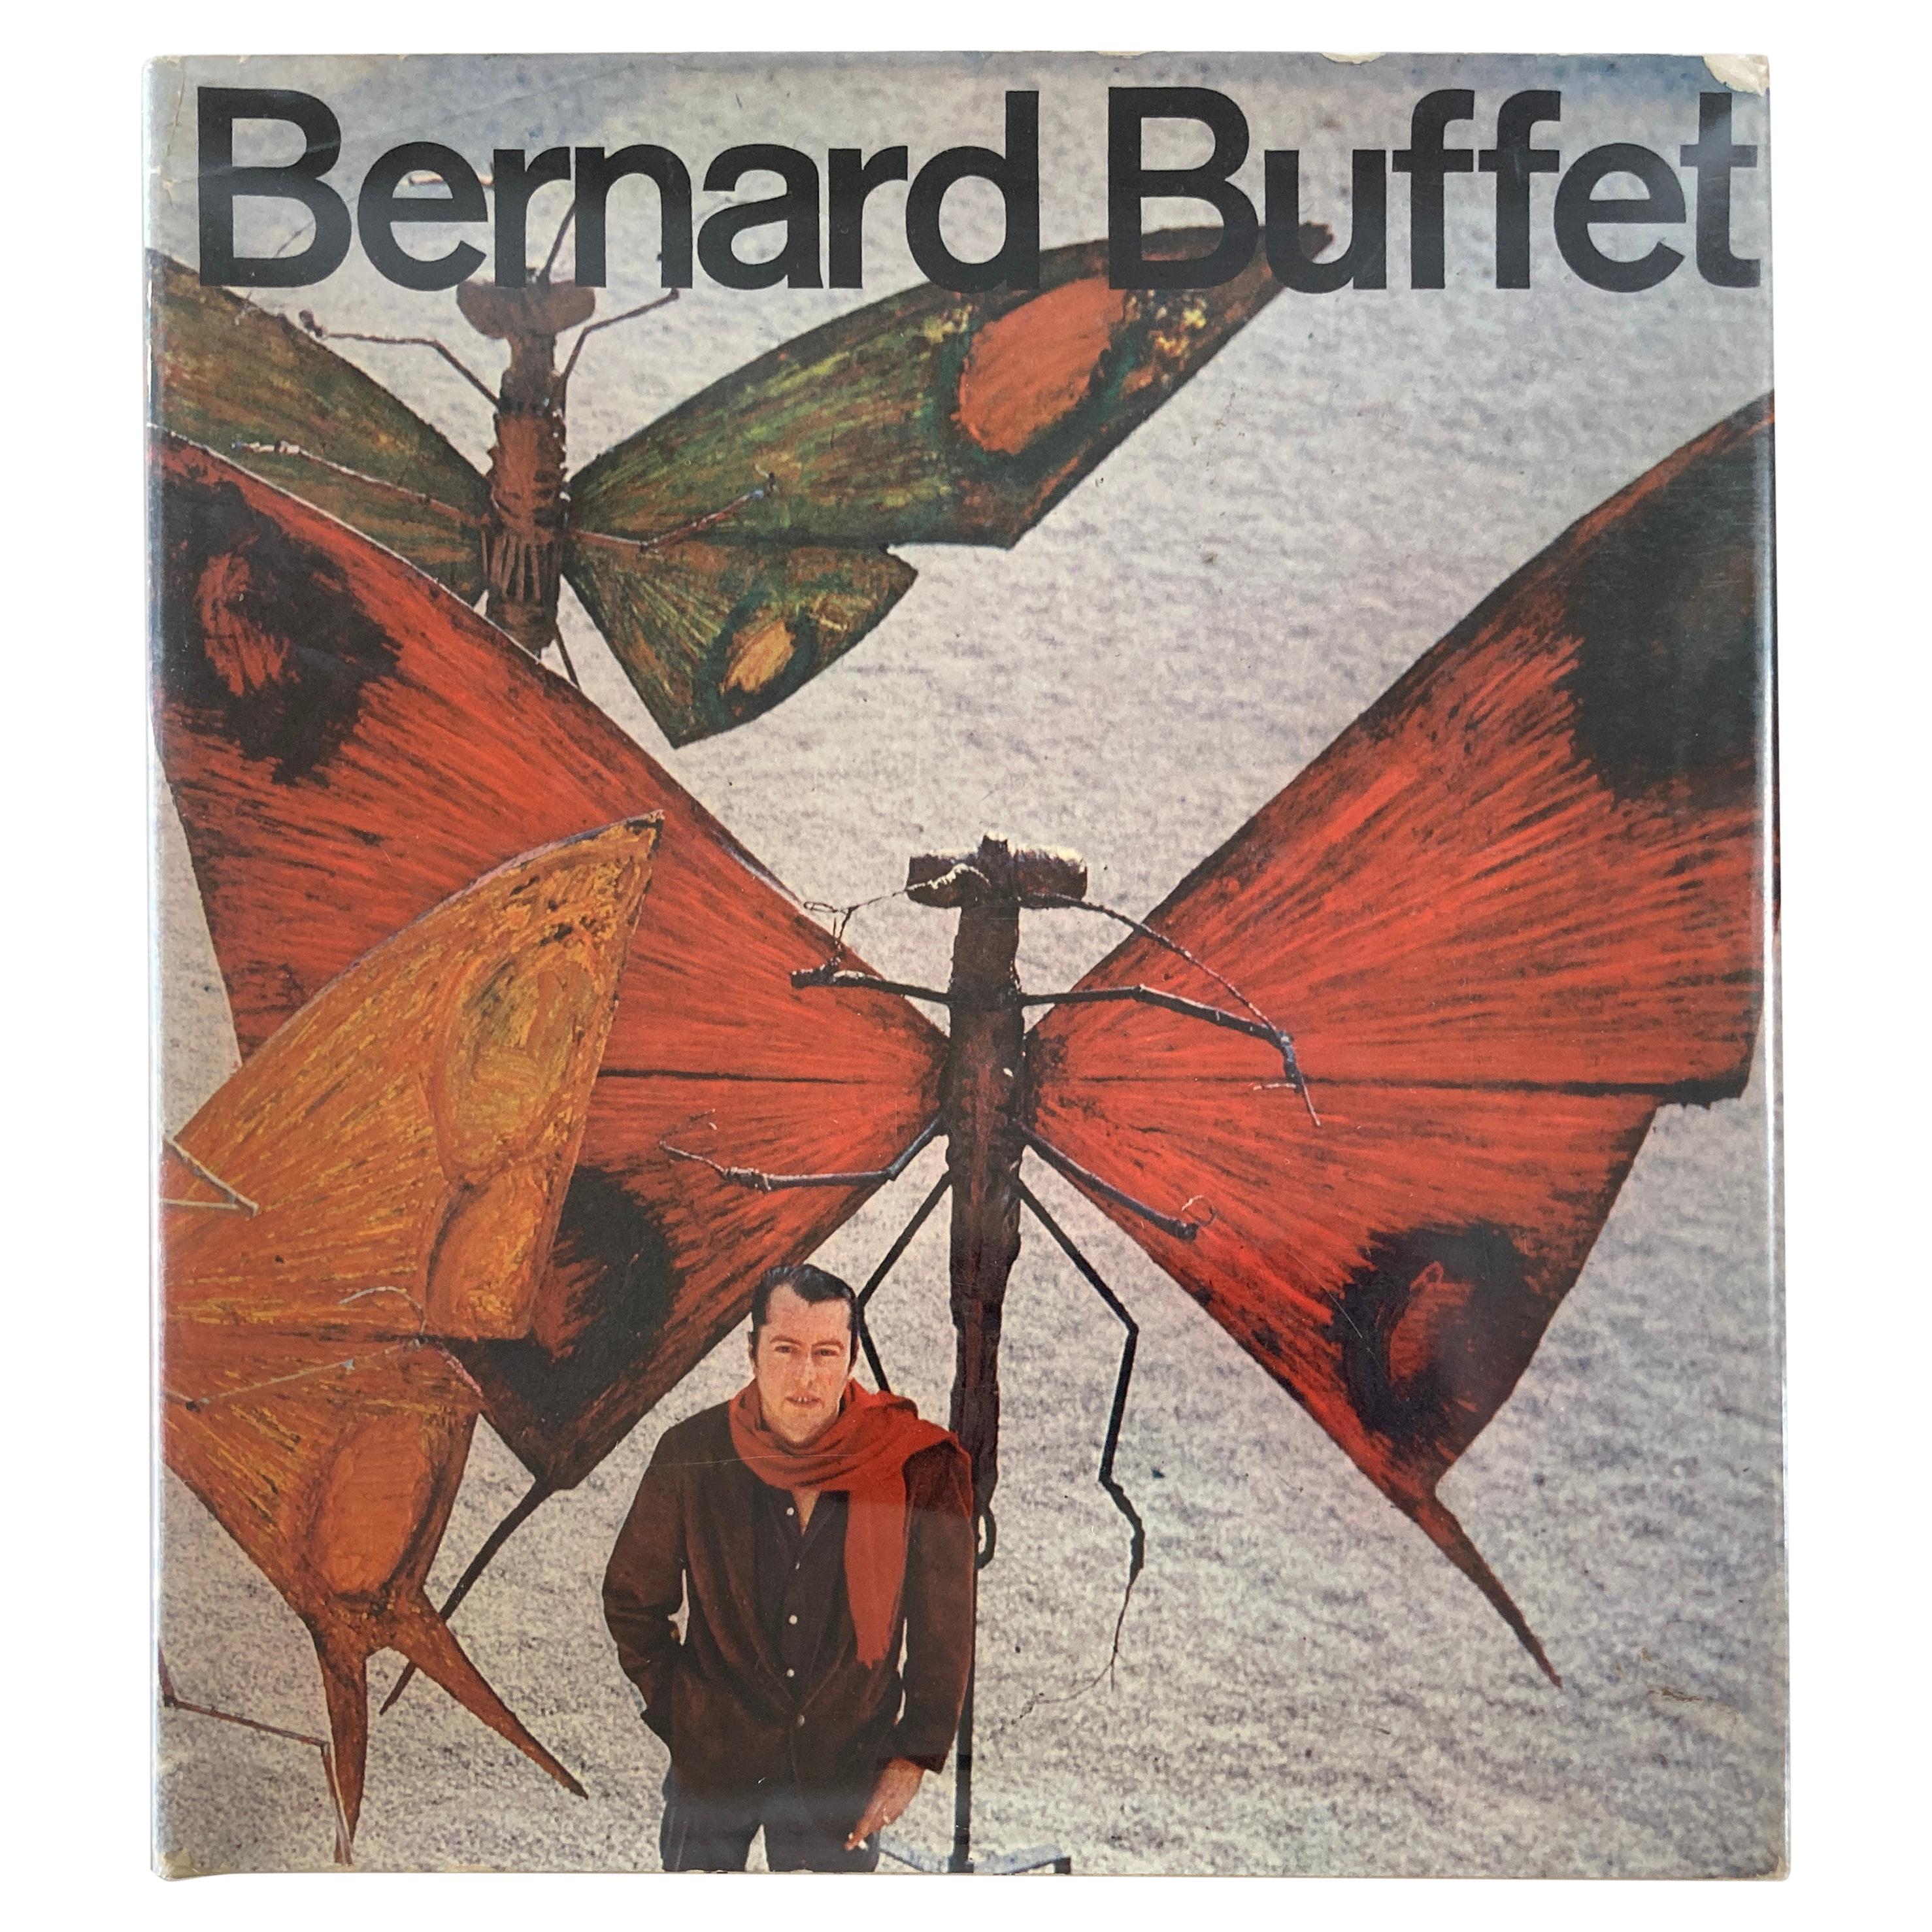 Bernard Buffet, Couchtisch, Sammlerbuch, 1966